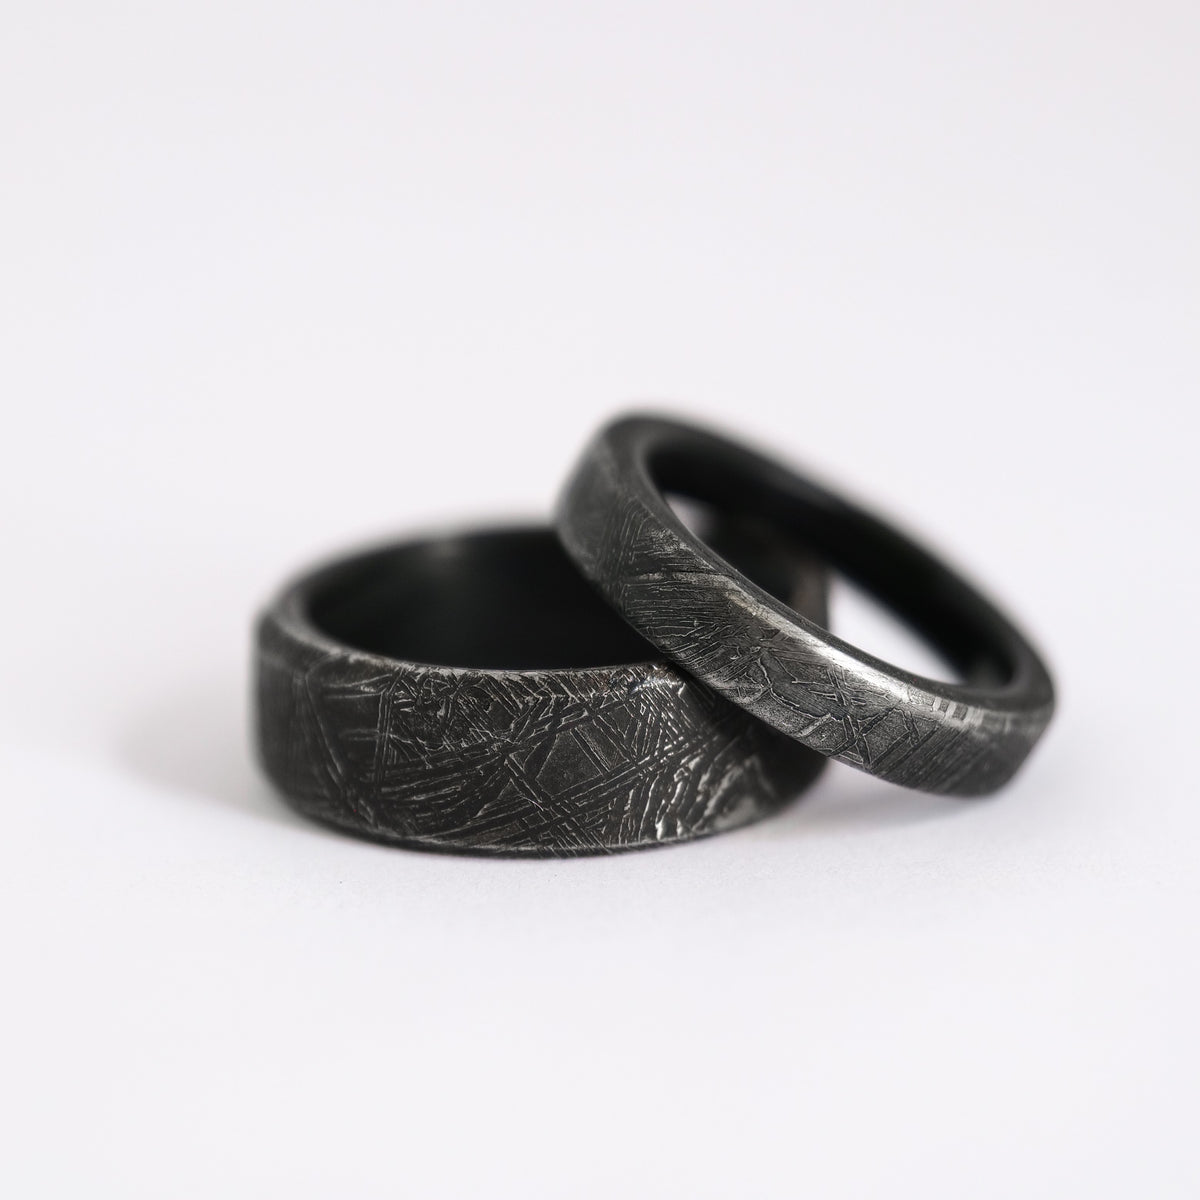 Rings Made From Meteorite